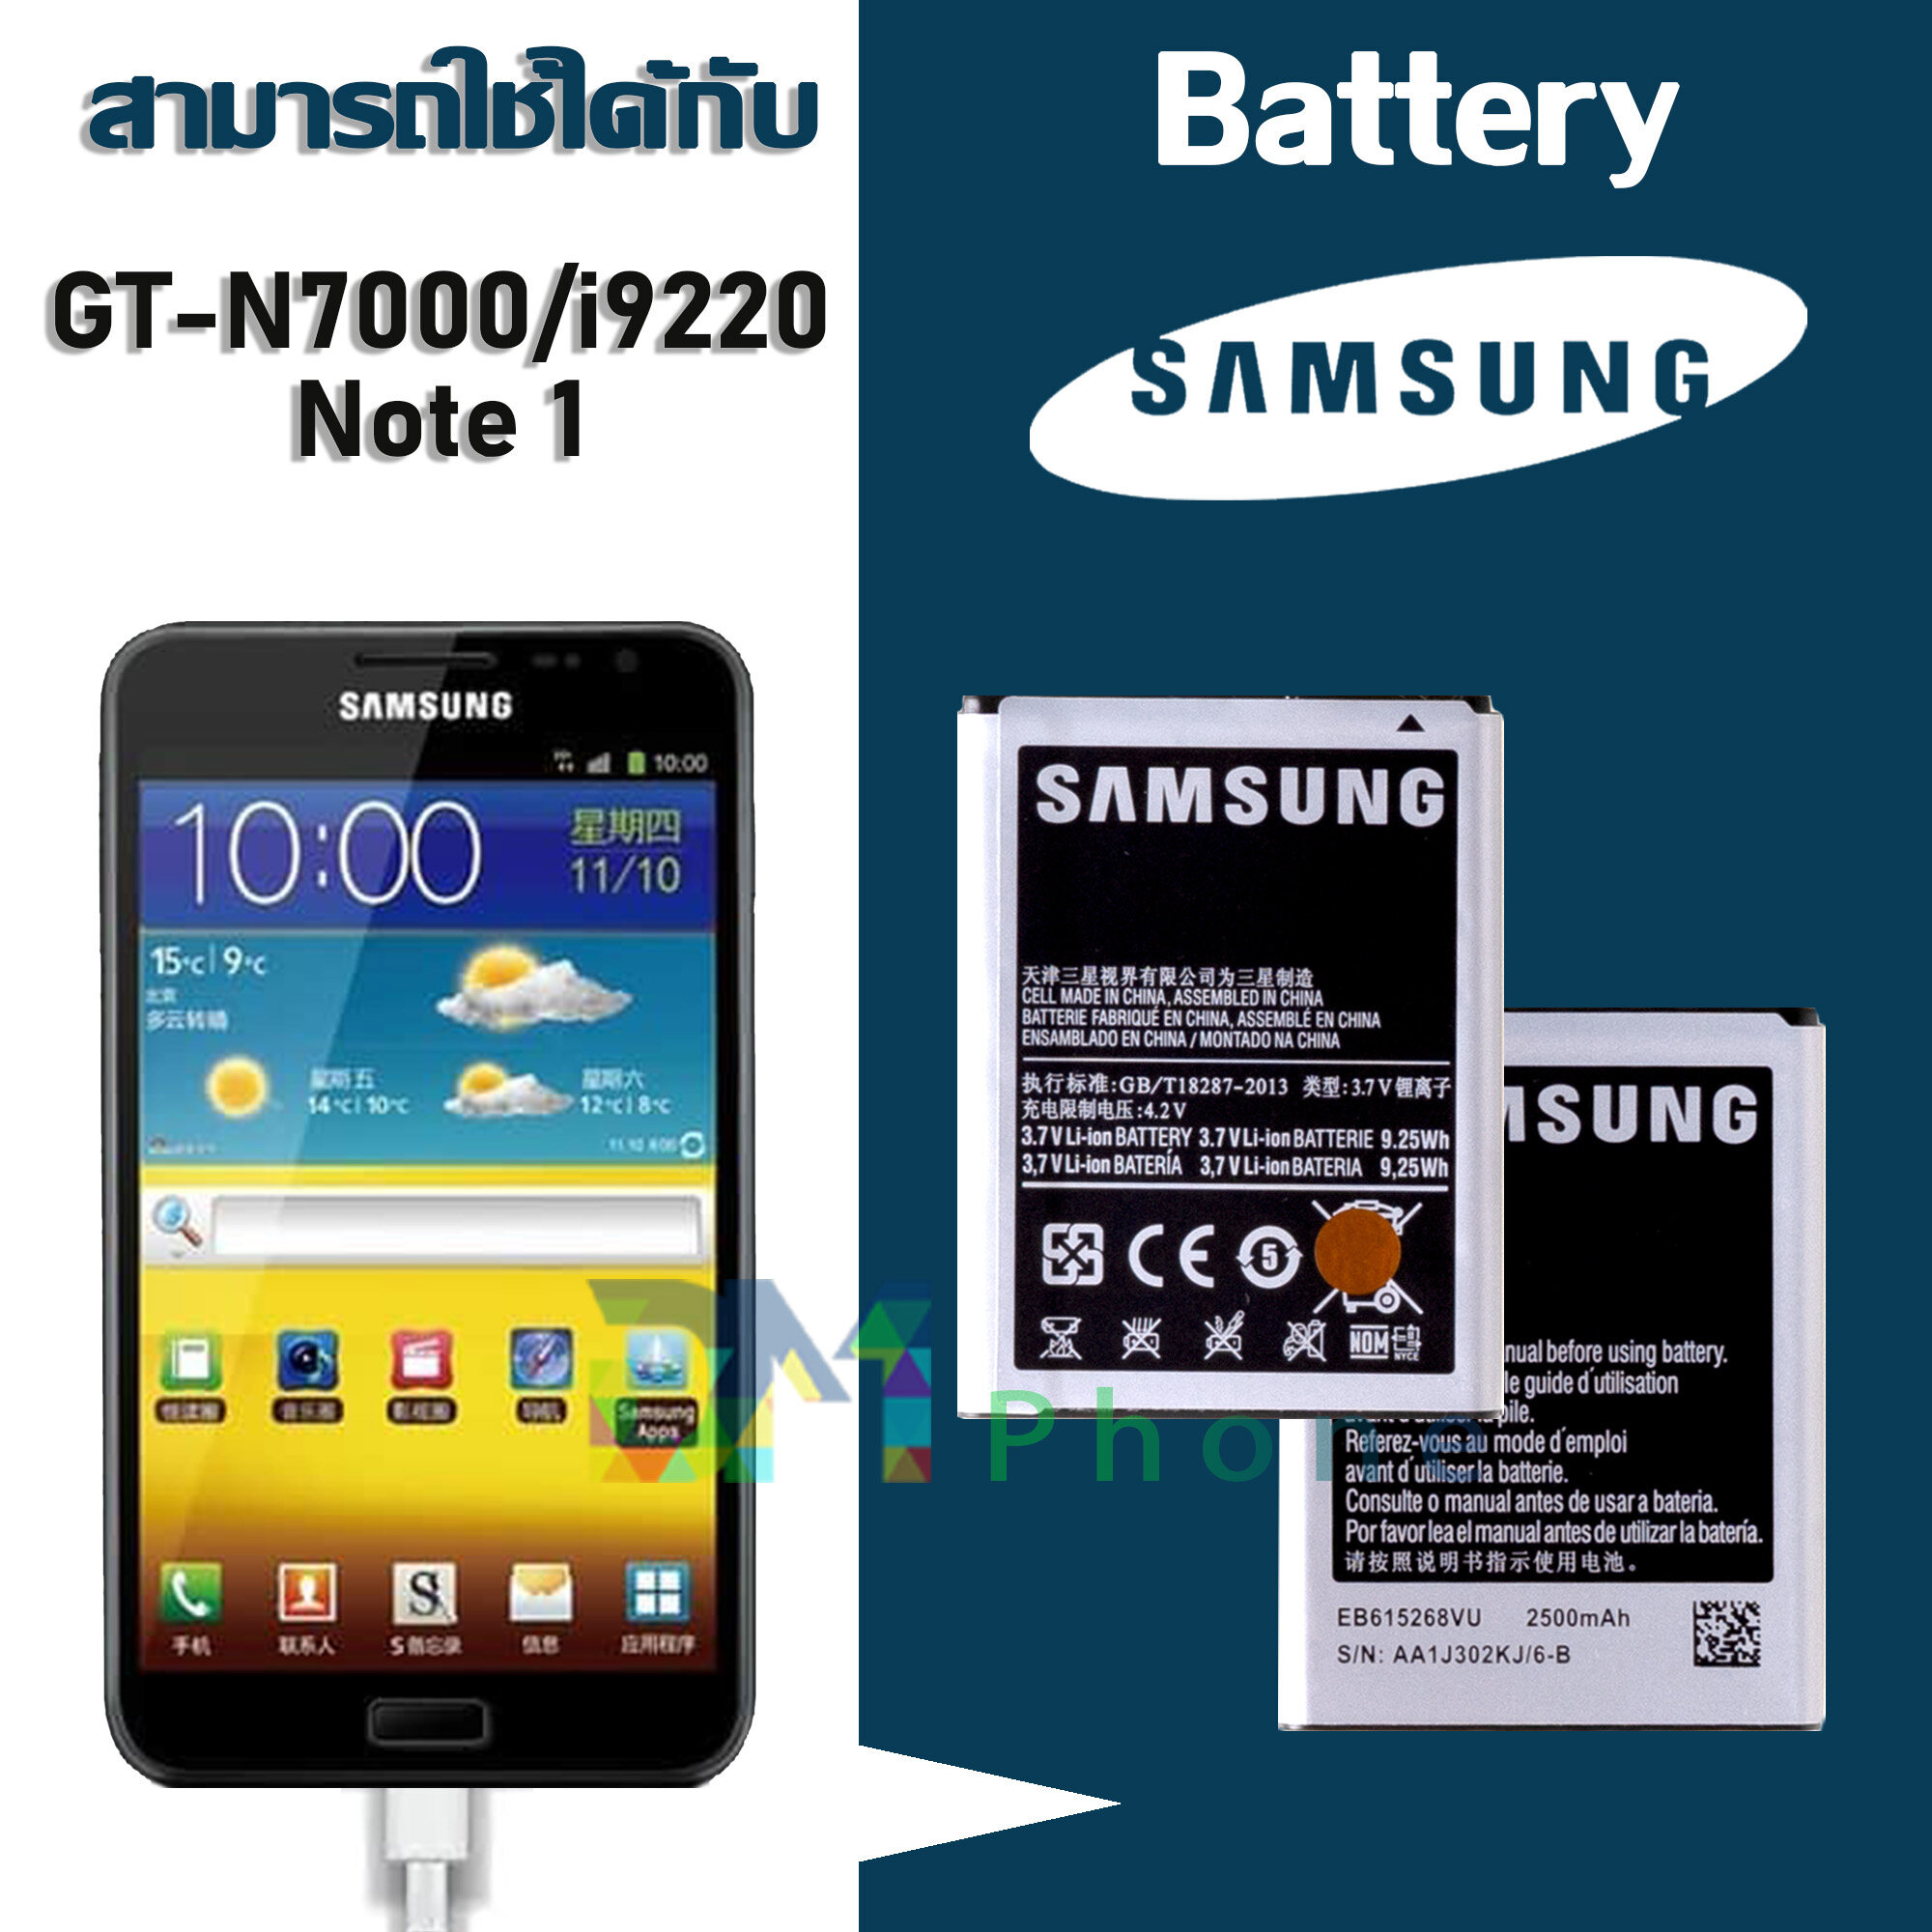 แบต Note 1(โน๊ต 1)/Note1/9220/GT-N7000  แบตเตอรี่ battery Samsung กาแล็กซี่ Note 1(โน๊ต 1)/Note1/9220/GT-N7000 มีประกัน 6 เดือน